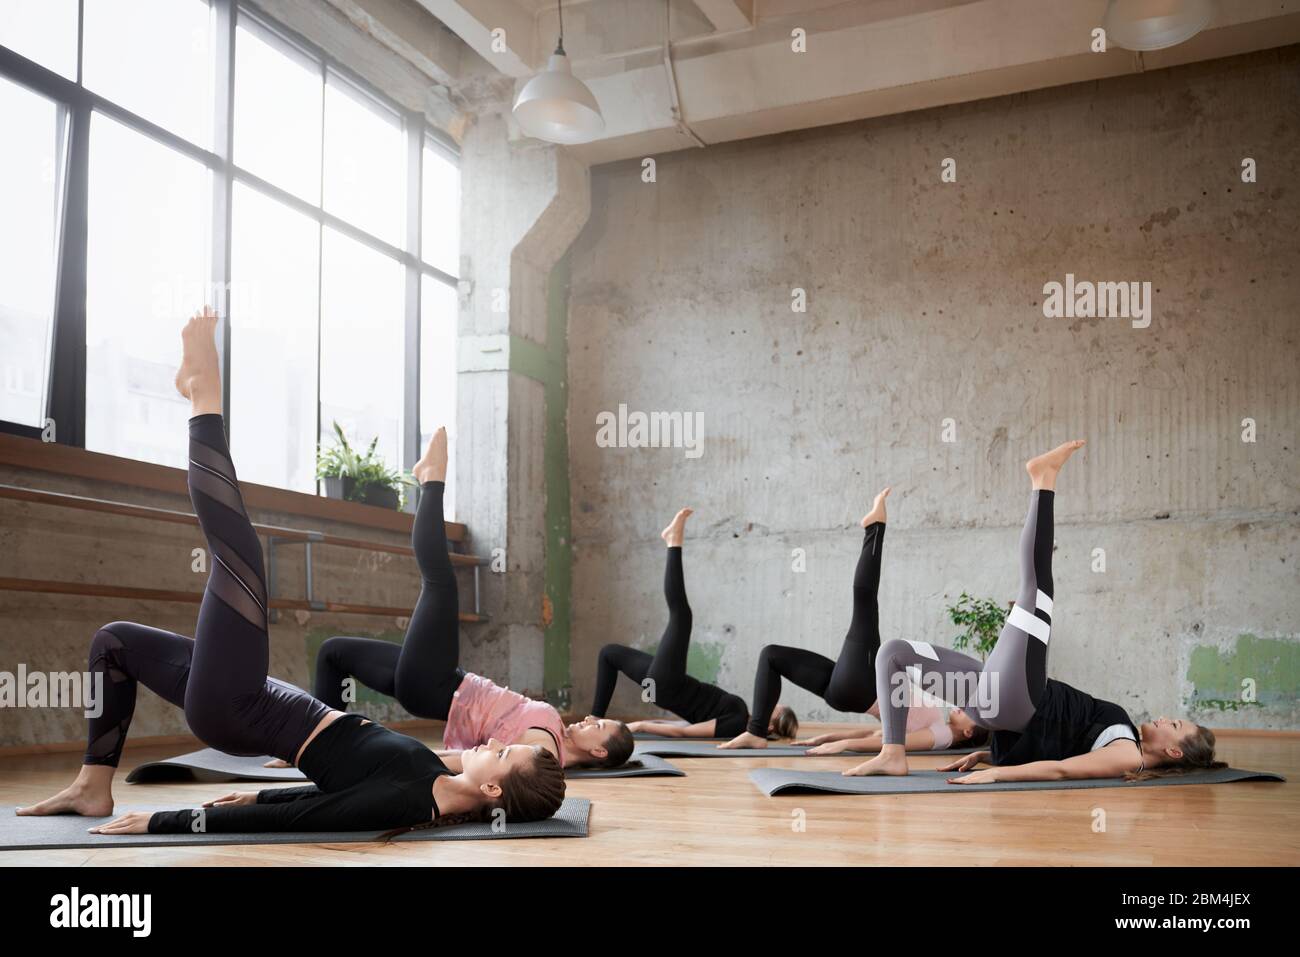 Vista laterale di un gruppo di ragazze sportive che allenano lo yoga nella sala fitness. Donne giovani in forma che si allungano, sdraiati su tappetini con gamba in palestra con grandi finestre. Interno loft. Concetto di sport. Foto Stock